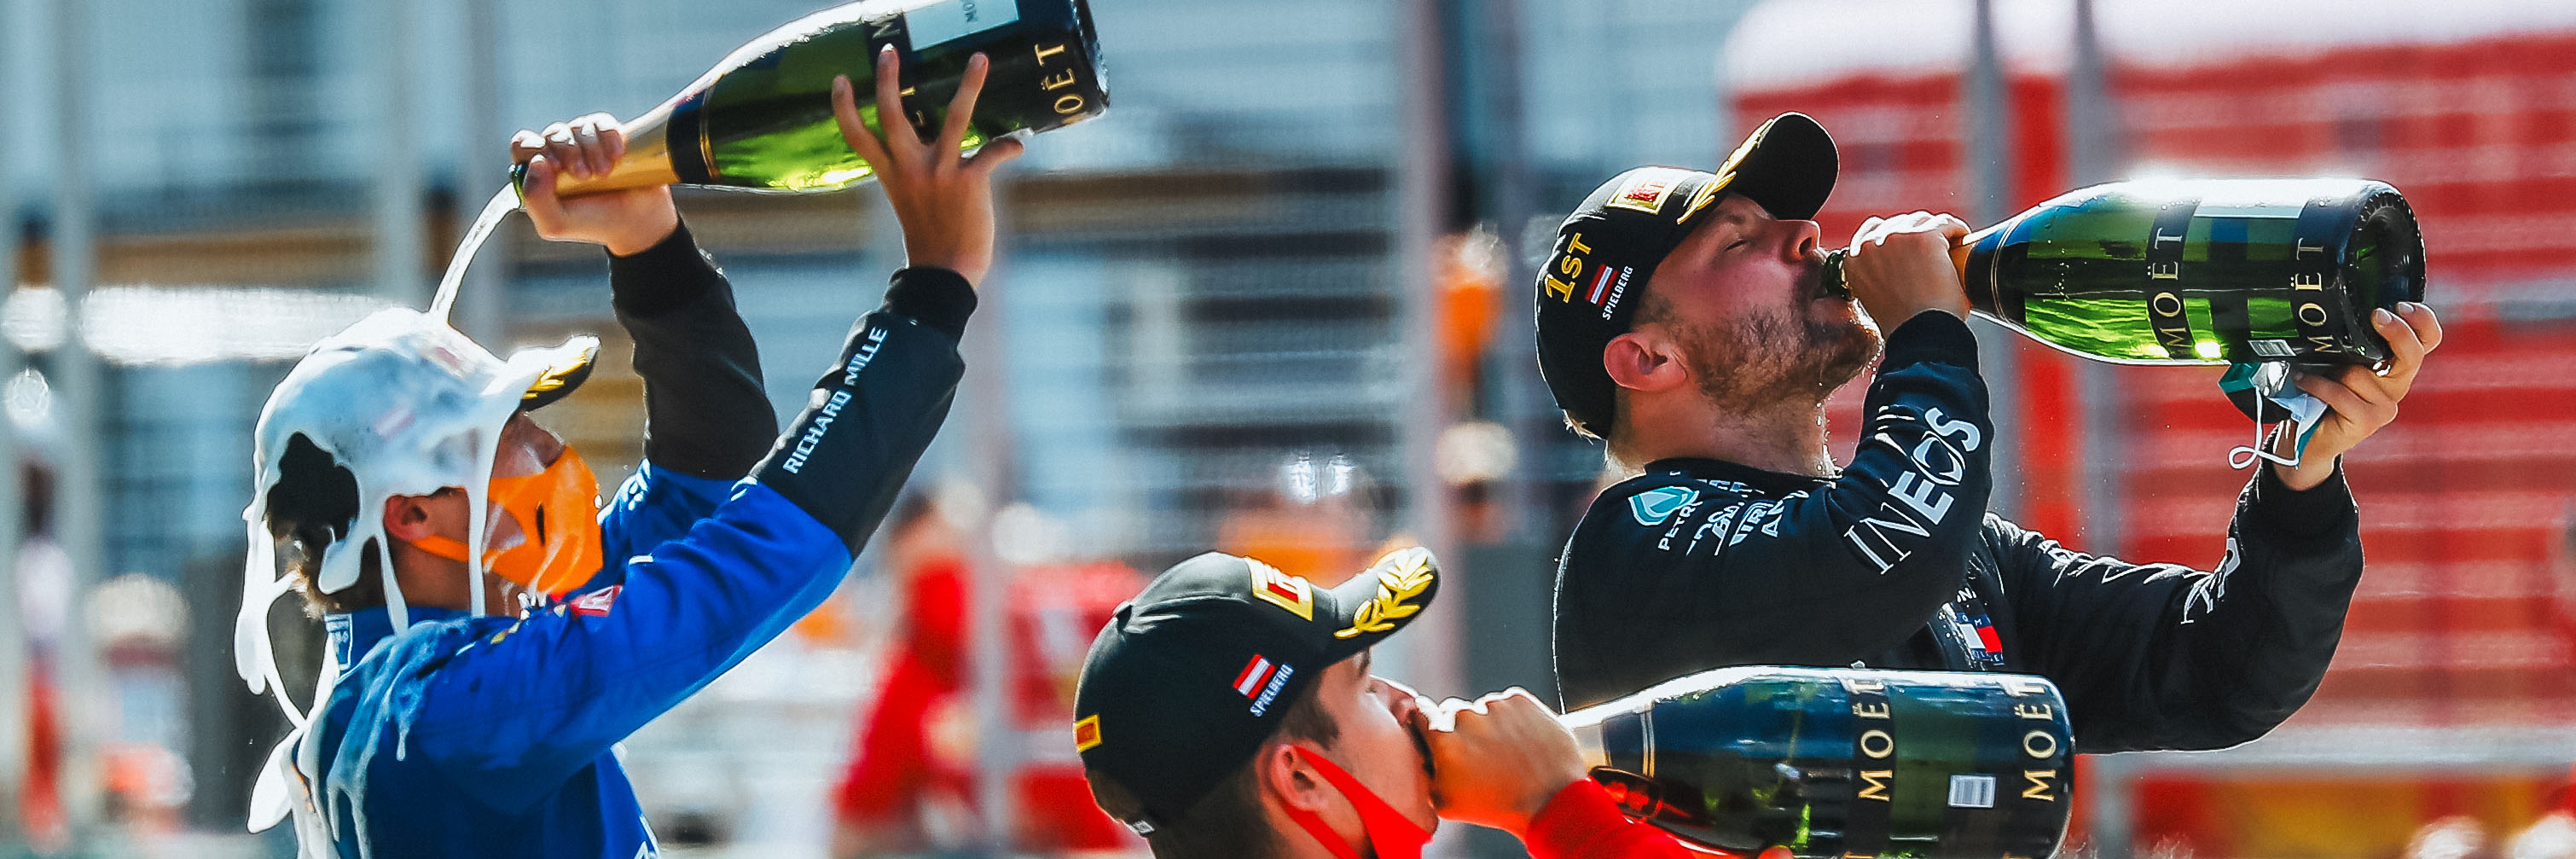 Lando Norris celebrating his maiden F1 podium at the 2020 Austrian Grand Prix